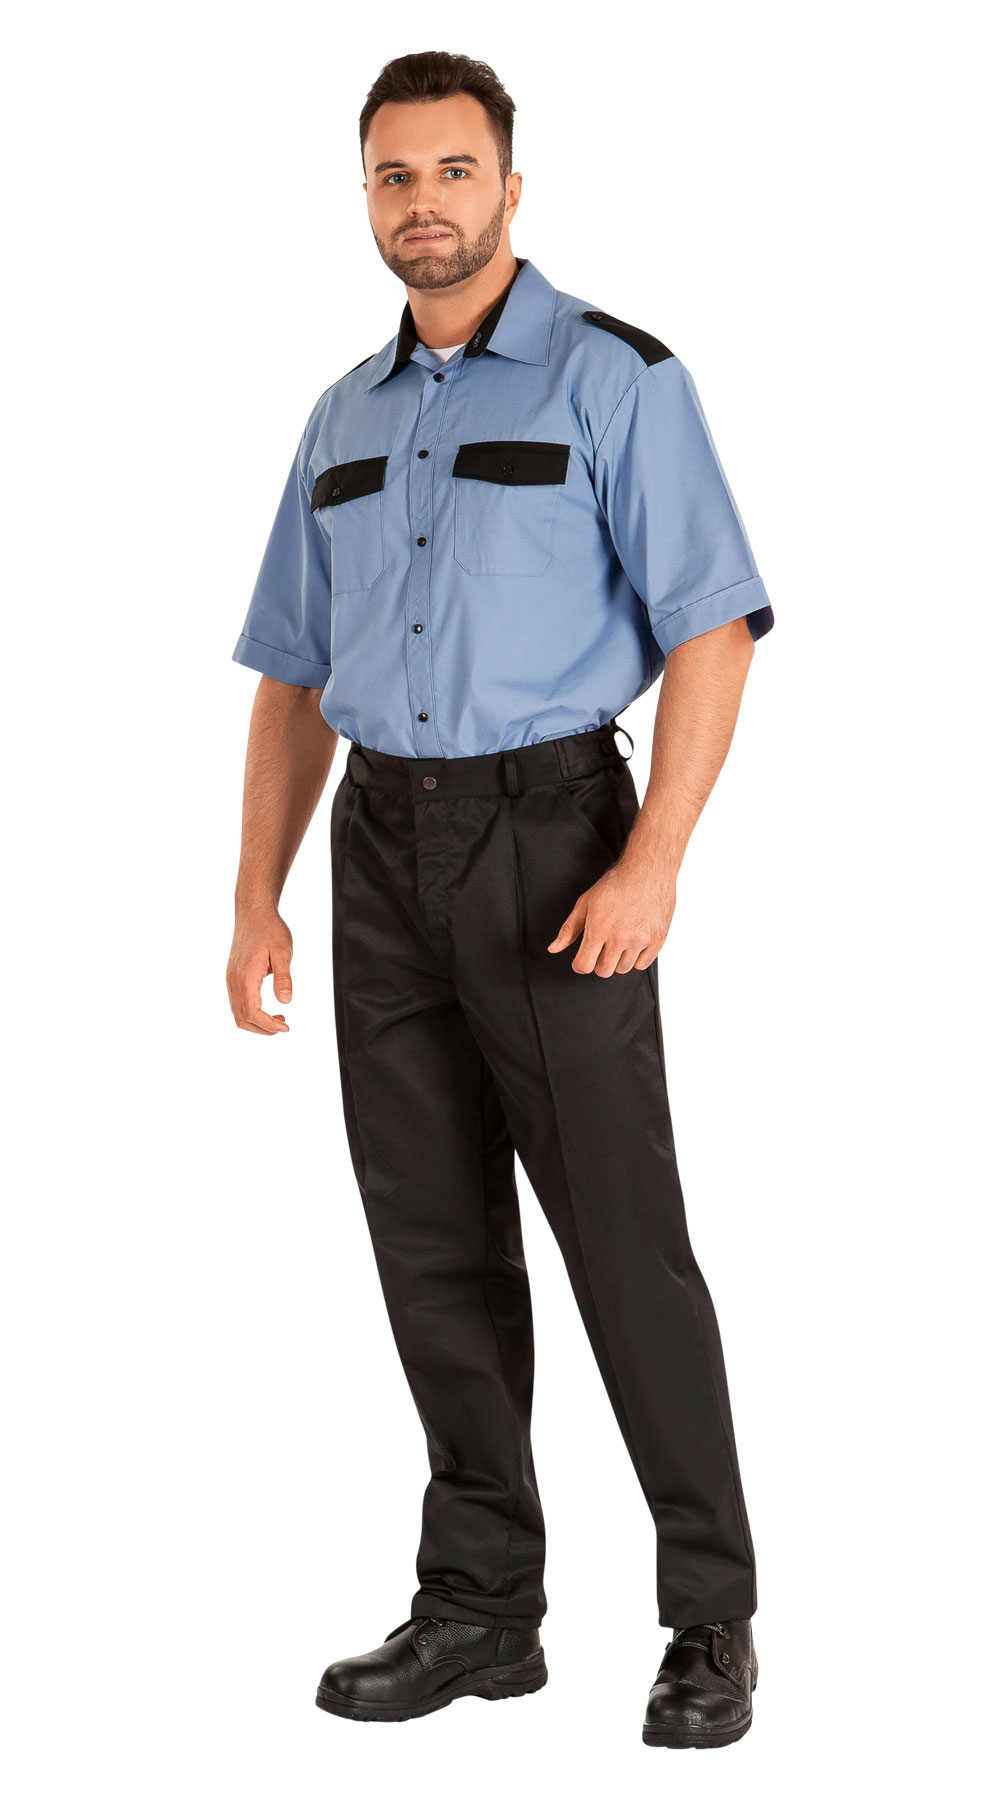 Сорочка для охраны СТРАЖ-1 мужская цв. голубой короткий рукав